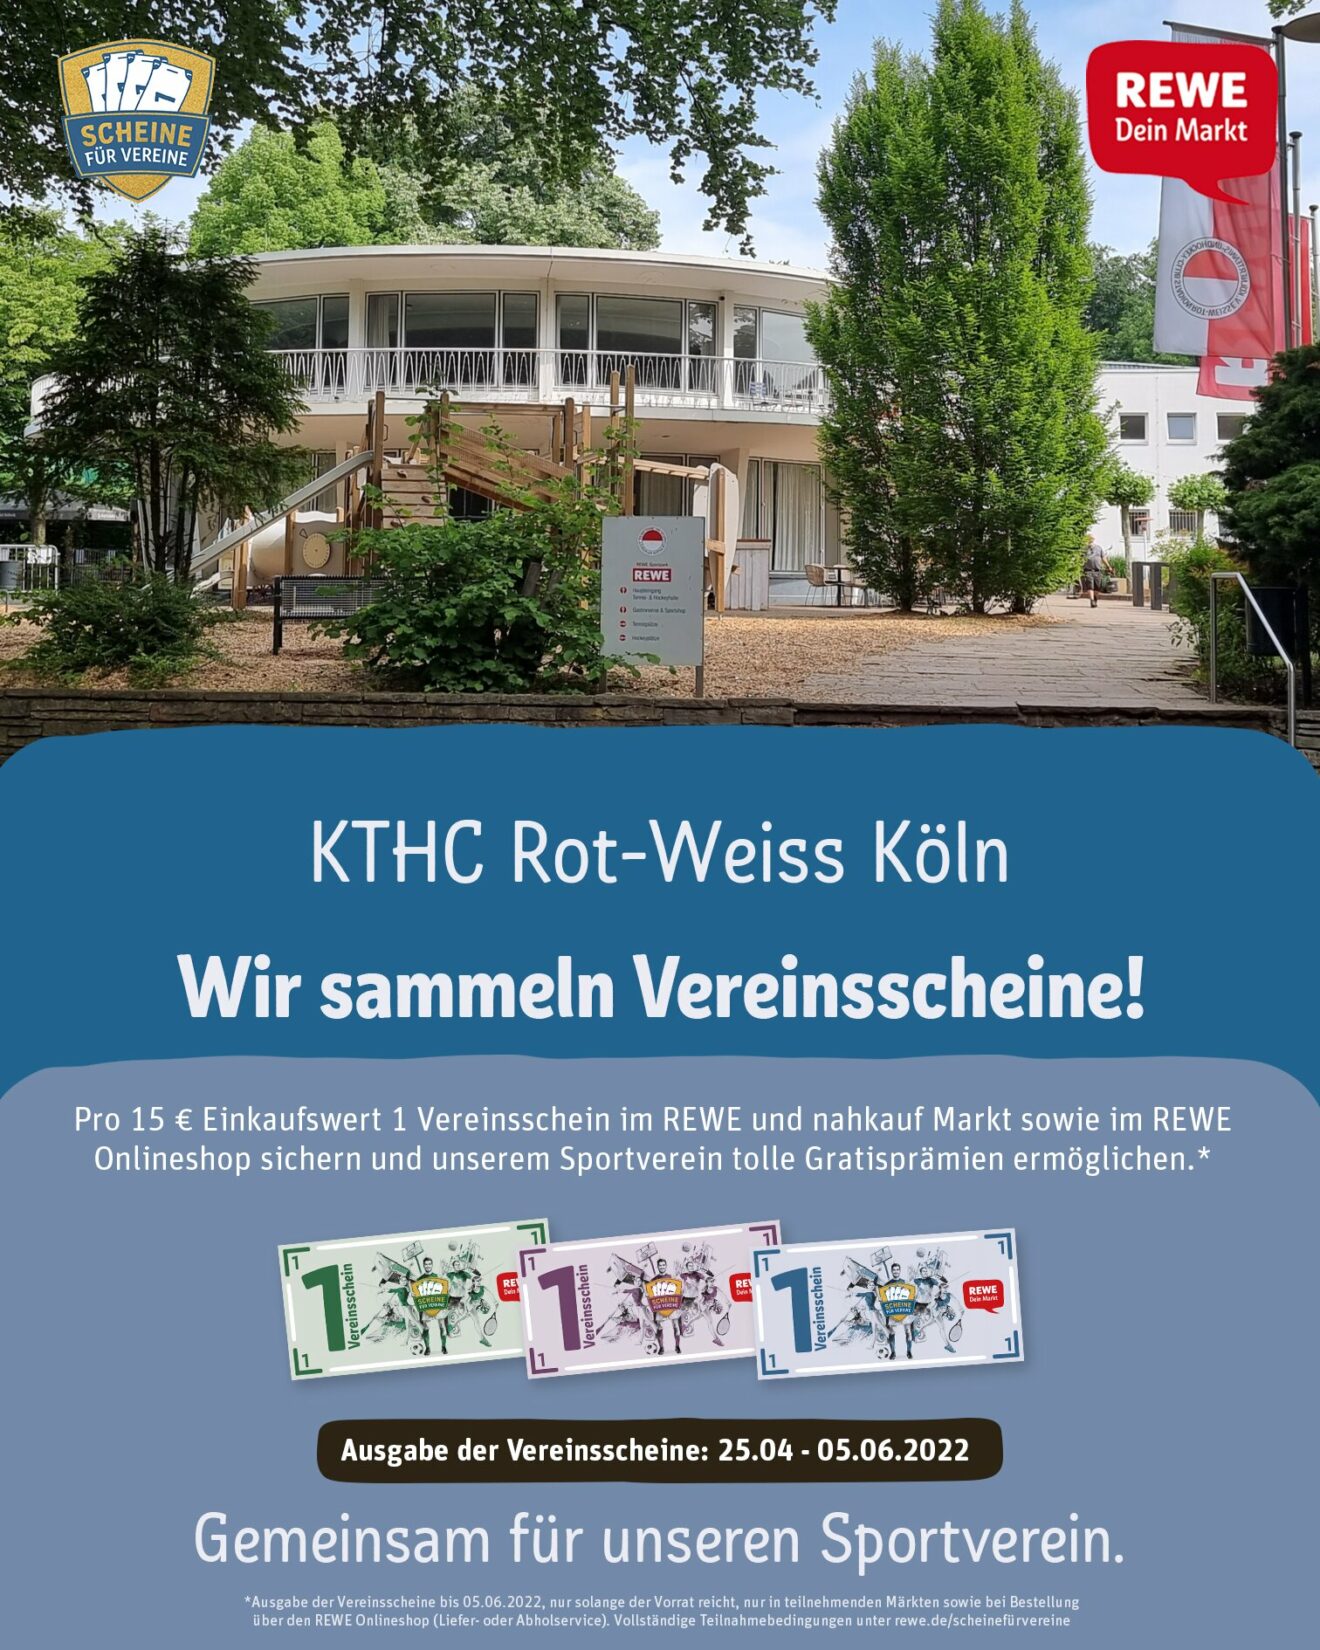 REWE_Scheine-fuer-Vereine_Poster-Feed